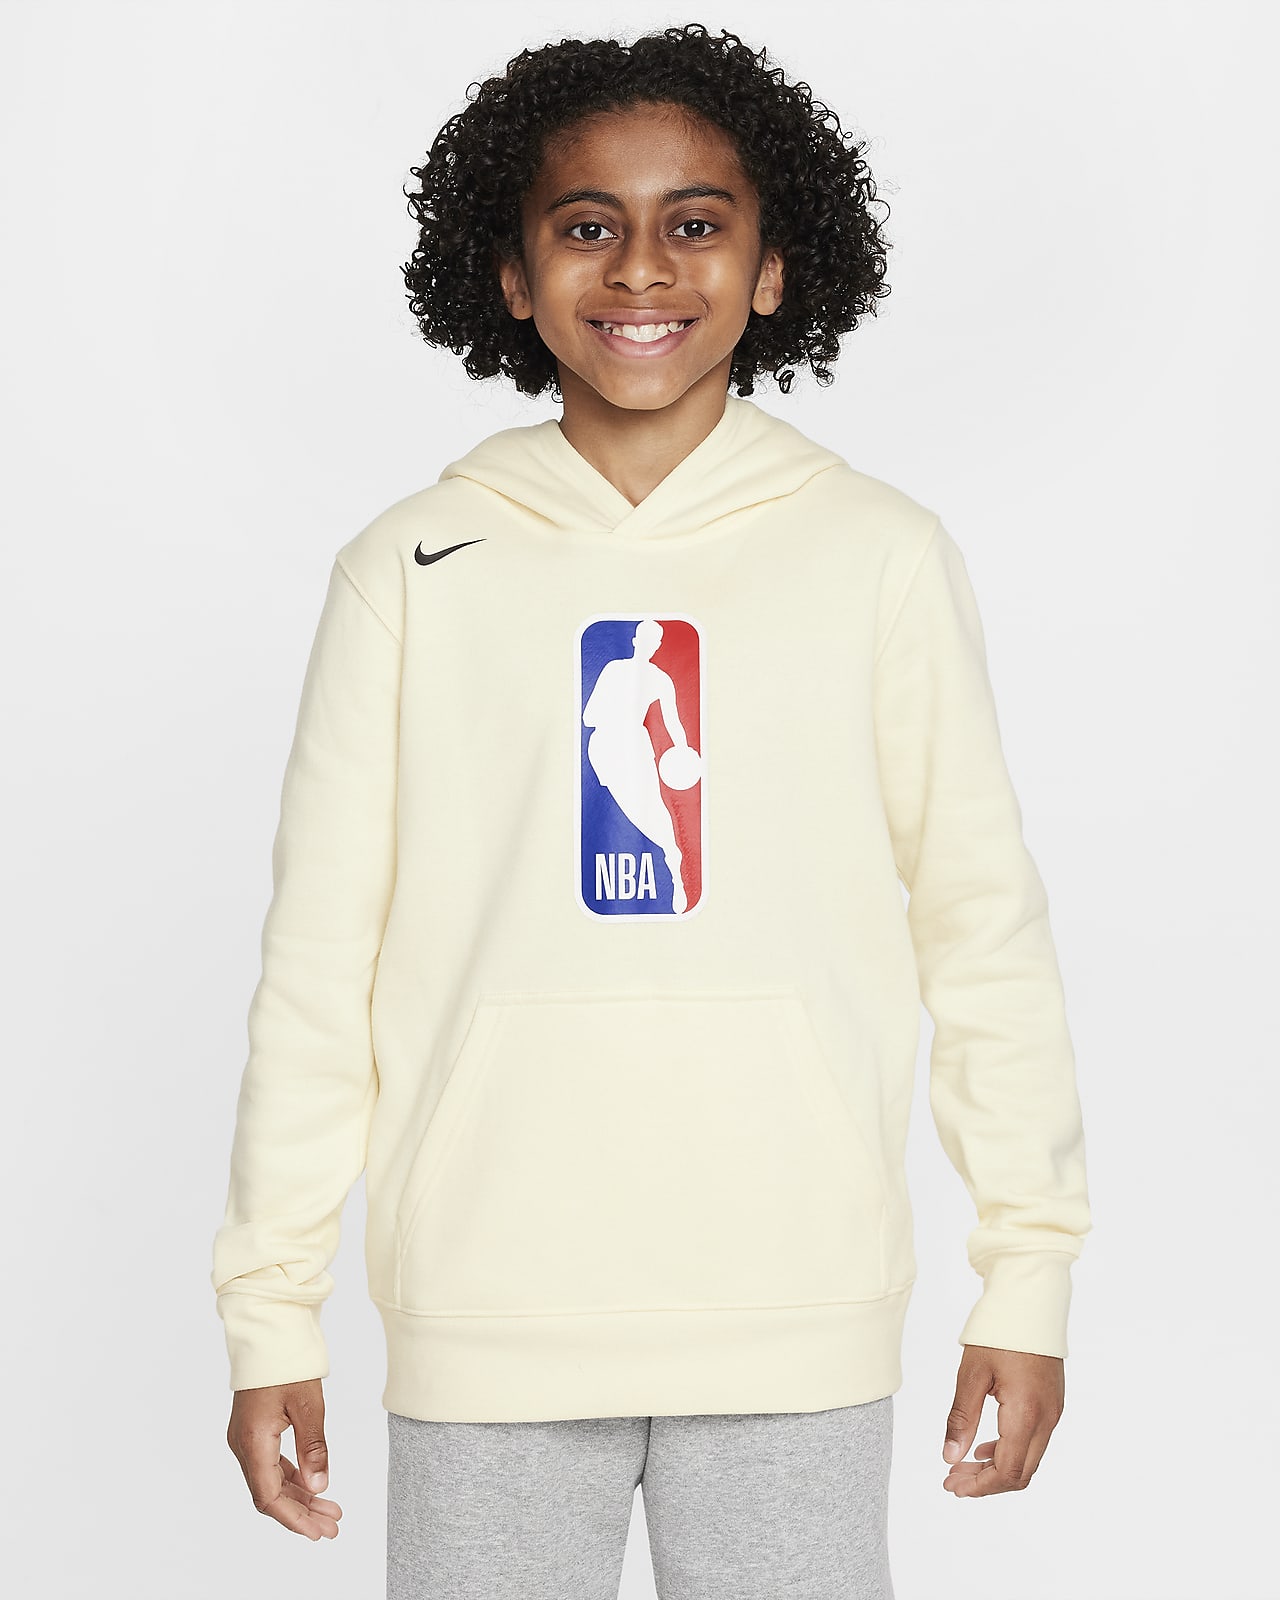 Team 31 Club Fleece Sudadera con capucha Nike de la NBA - Niño/a